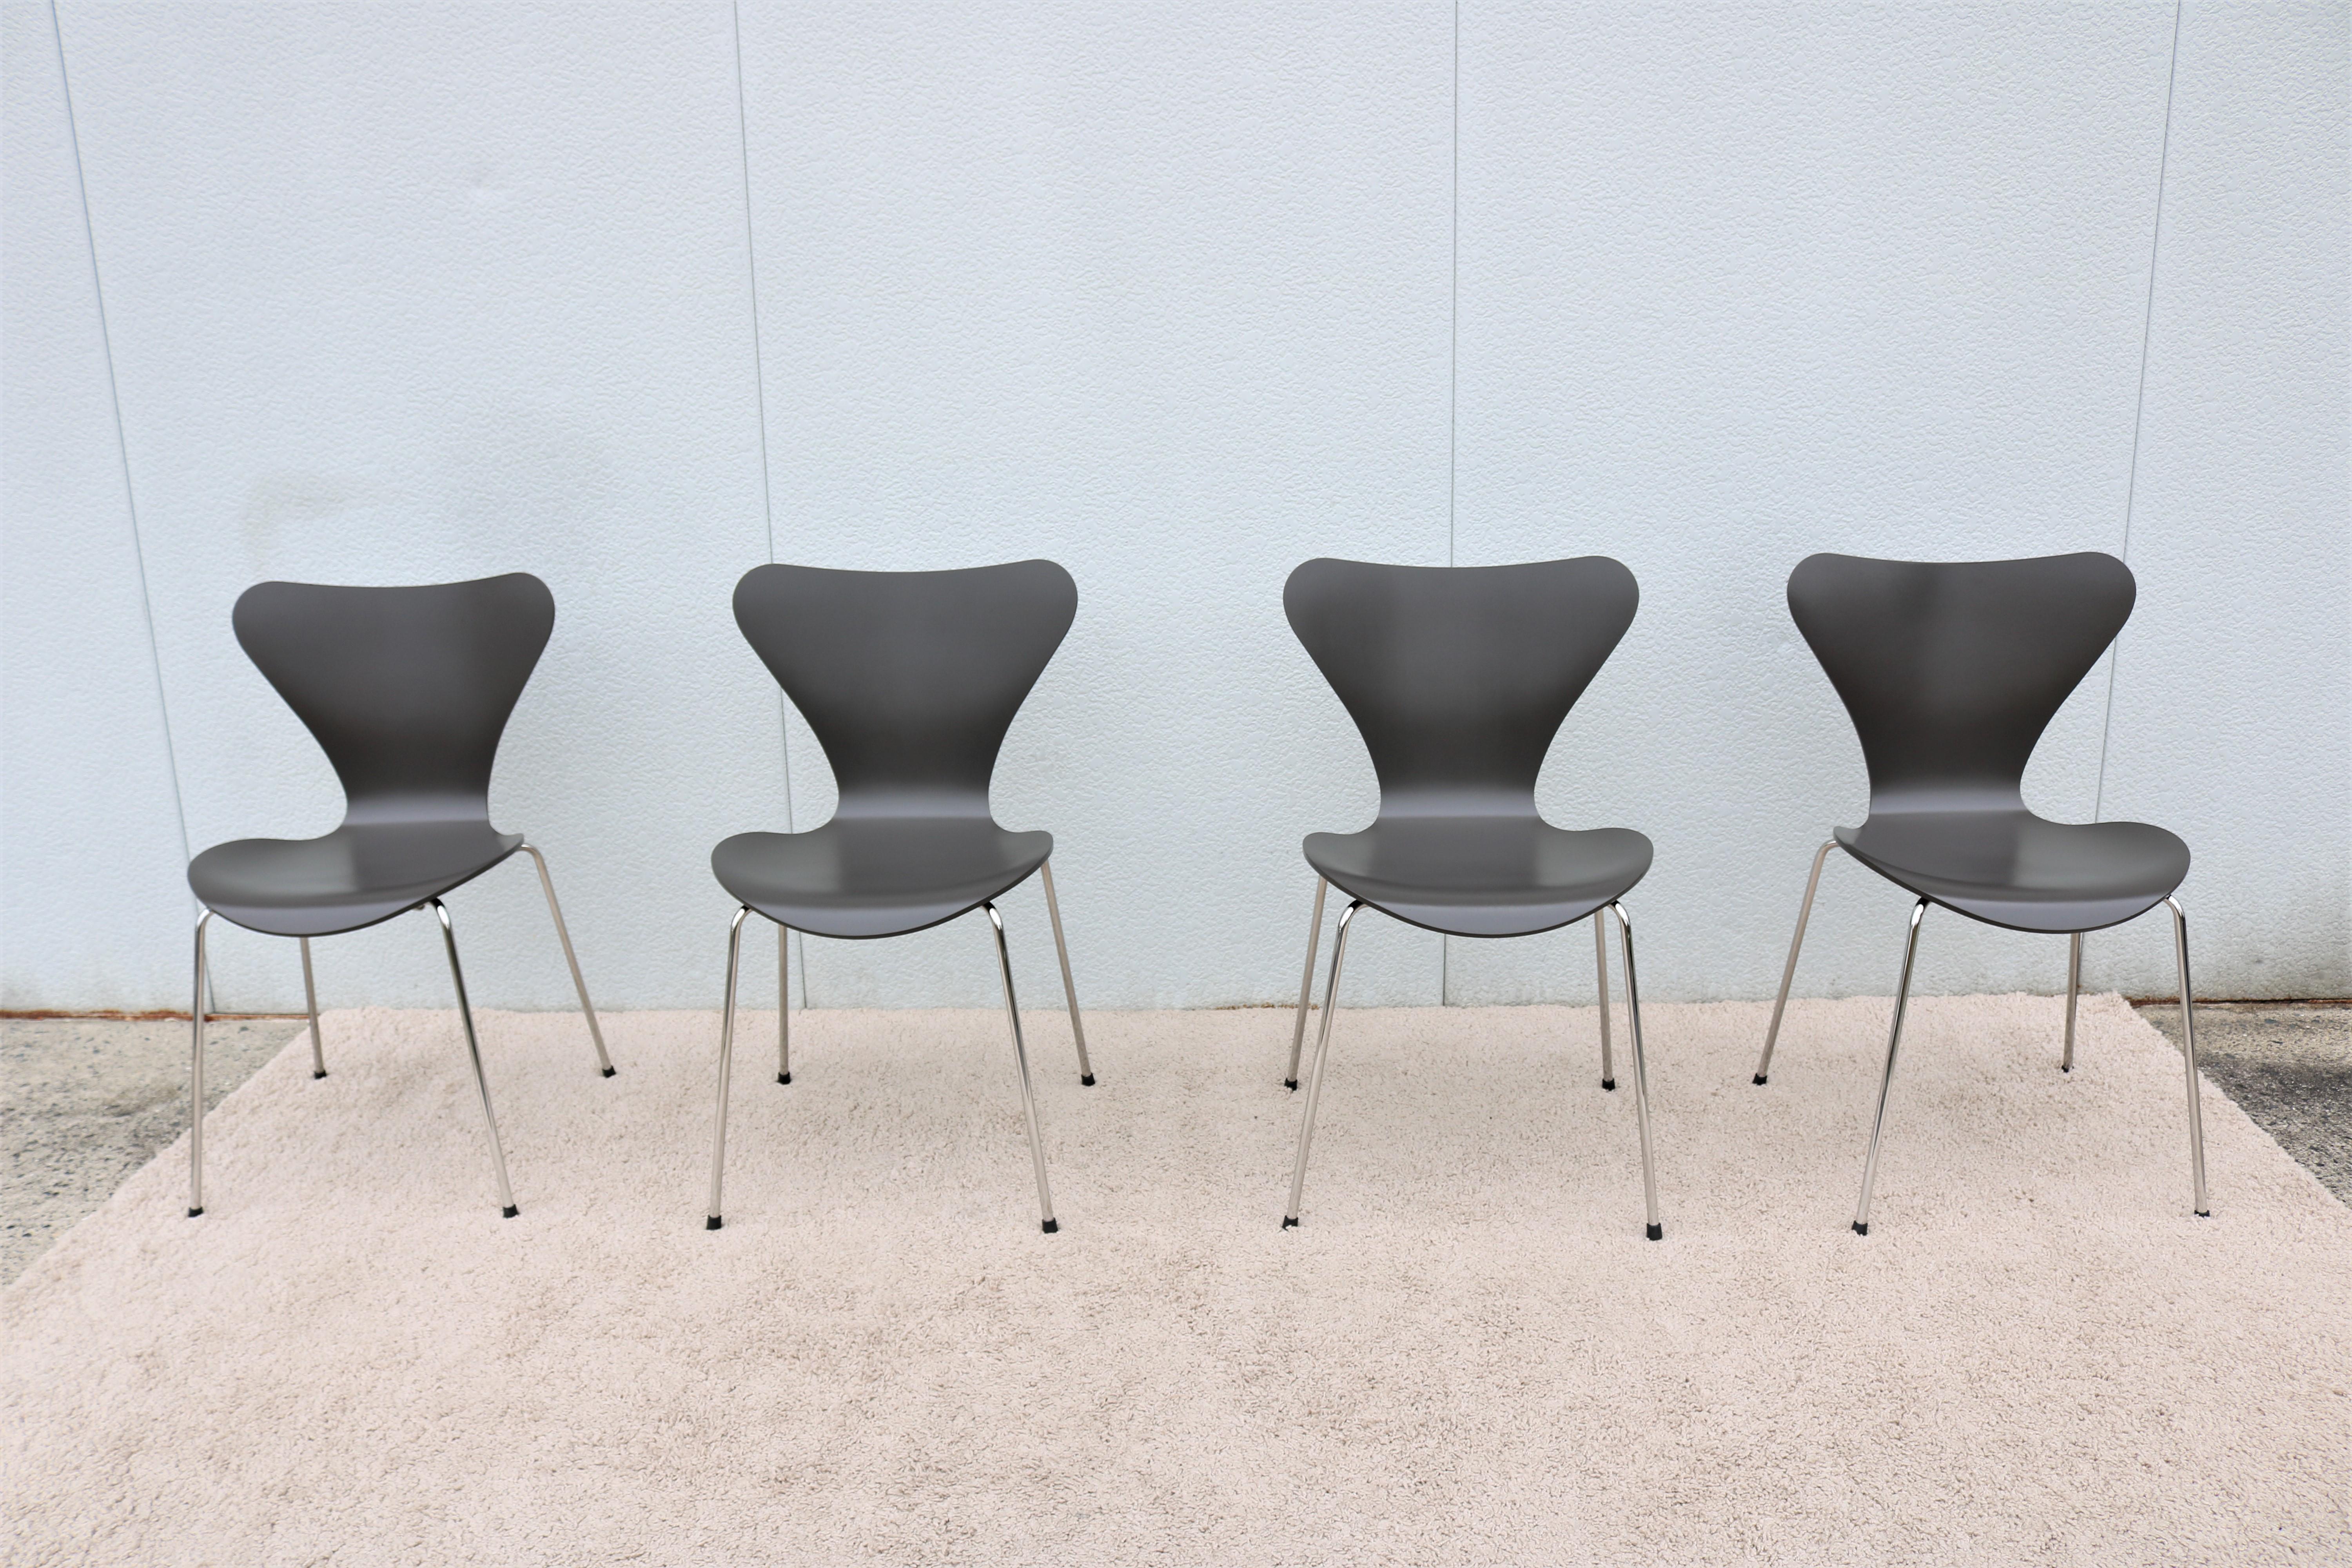 Cette série de 7 chaises élégantes et polyvalentes a été introduite en 1955 par le designer Arne Jacobsen et est instantanément devenue une icône du design.
Siège en bois courbé très confortable, c'est de loin la chaise la plus vendue de l'histoire